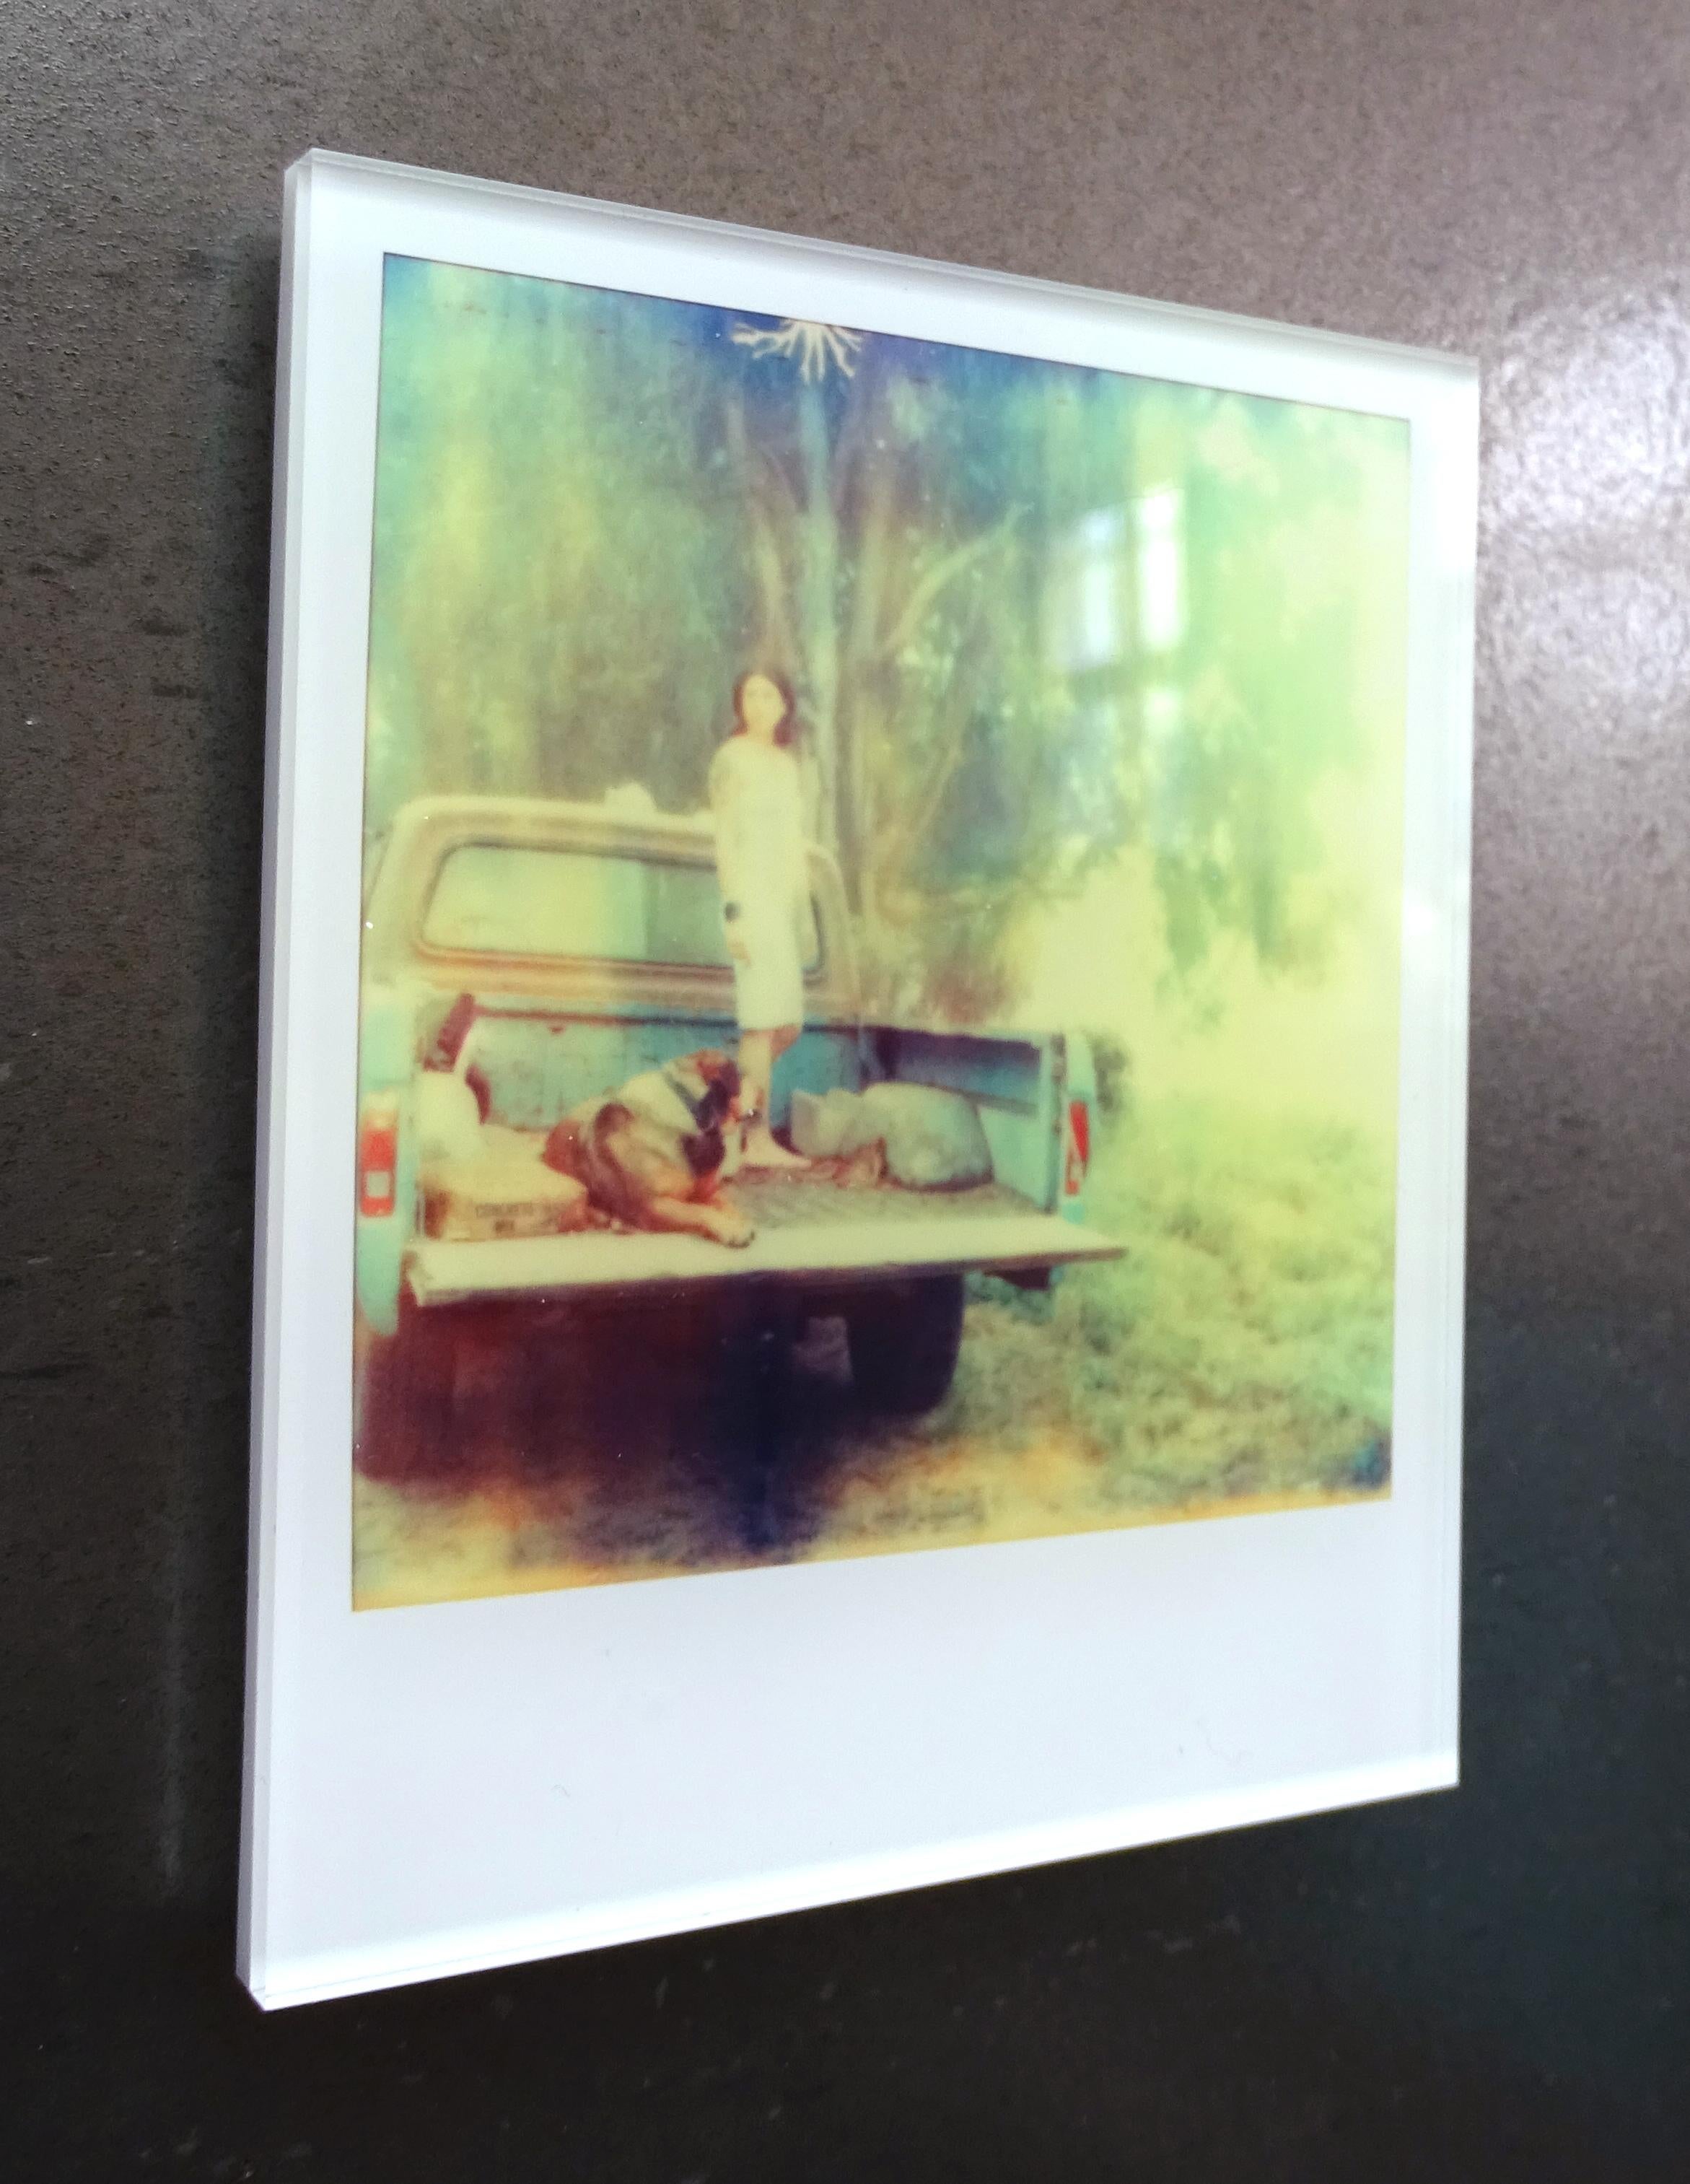 Stefanie Schneider Minis - Saigon - based on a Polaroid 2